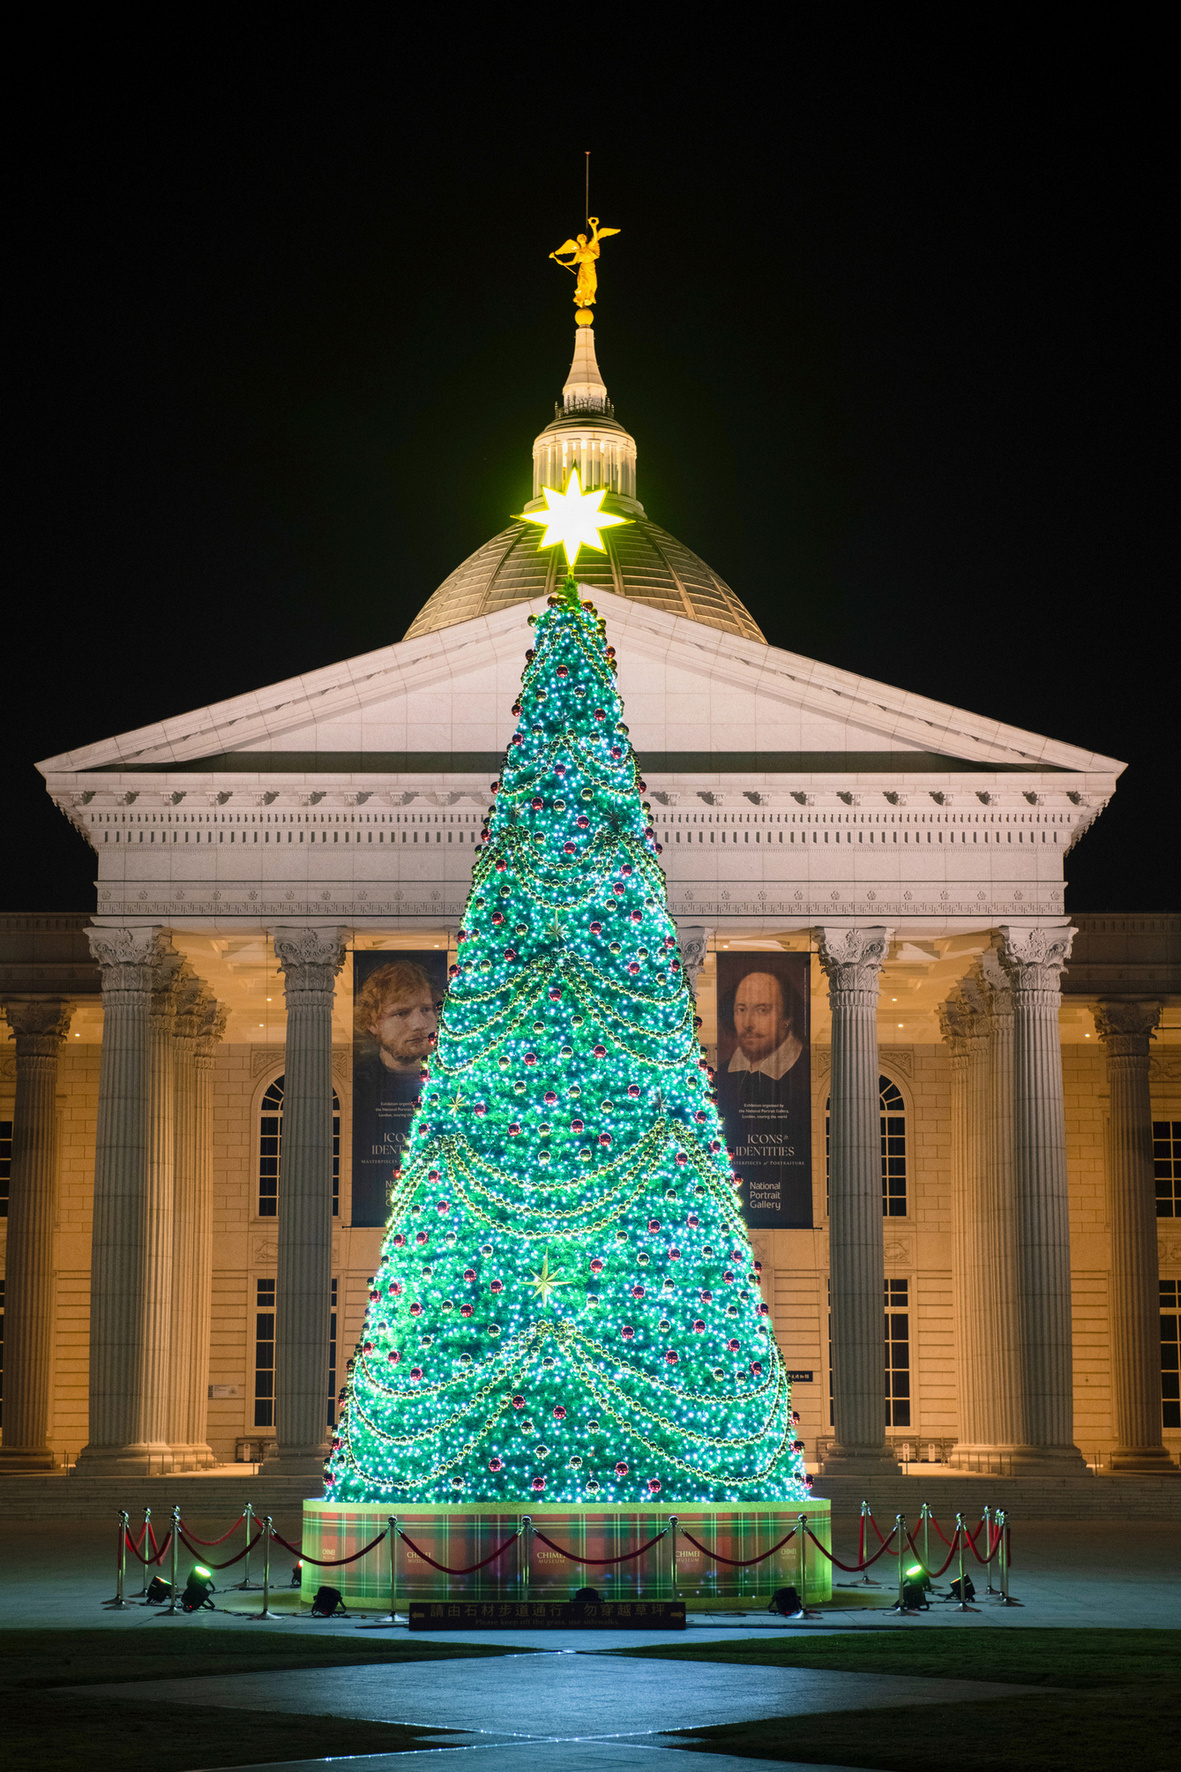 奇 美 博 物 館 「 幸 福 聖 誕 樹 」 閃 耀 登 場 ， 預 計 再 度 成 為 民 眾 拍 照 熱 點 。 圖 / 奇 美 博 物 館 